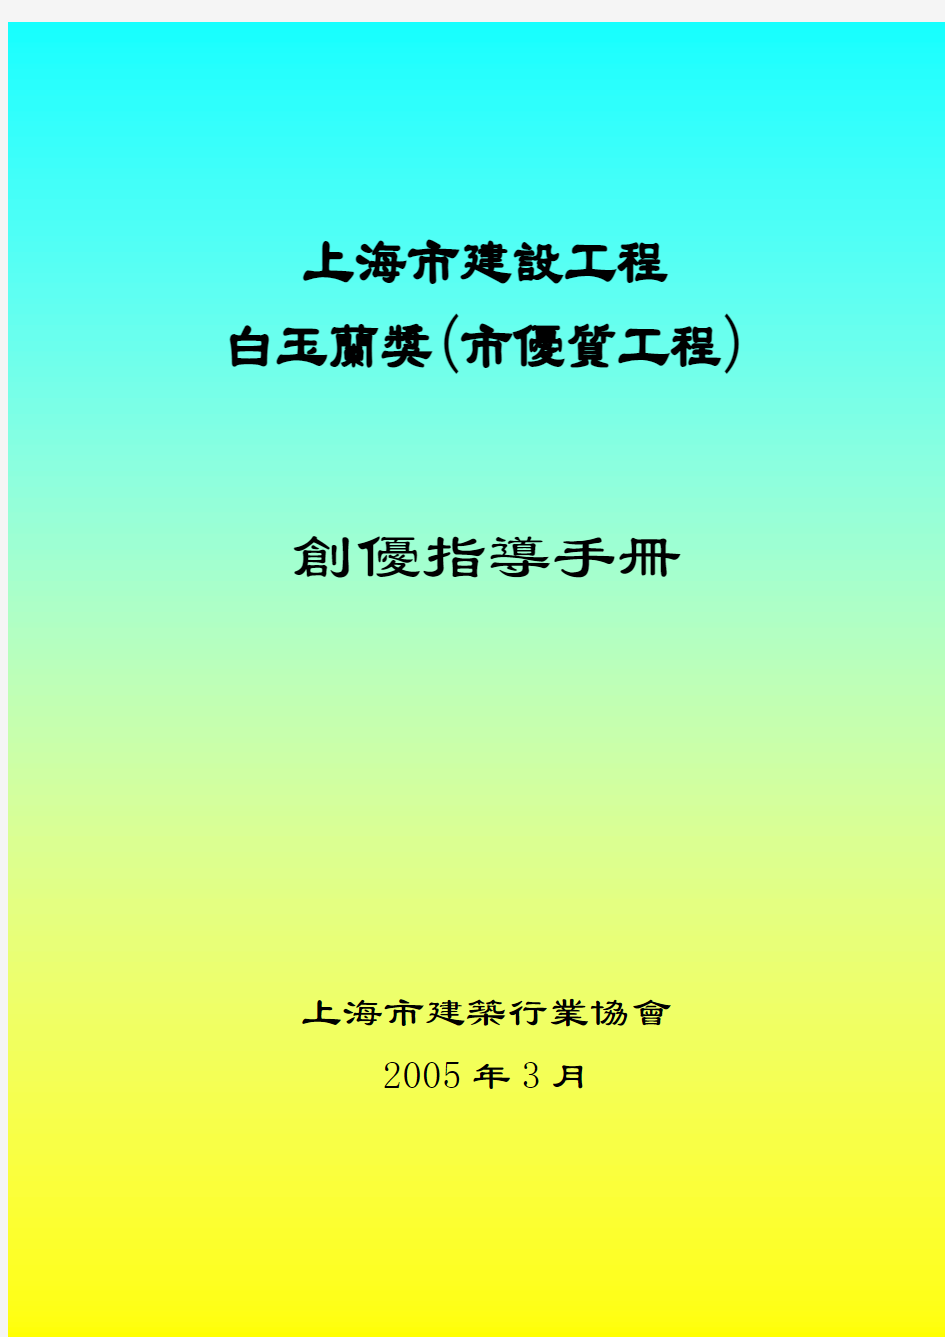 《上海市建设工程白玉兰(市优质工程)创优指导手册》